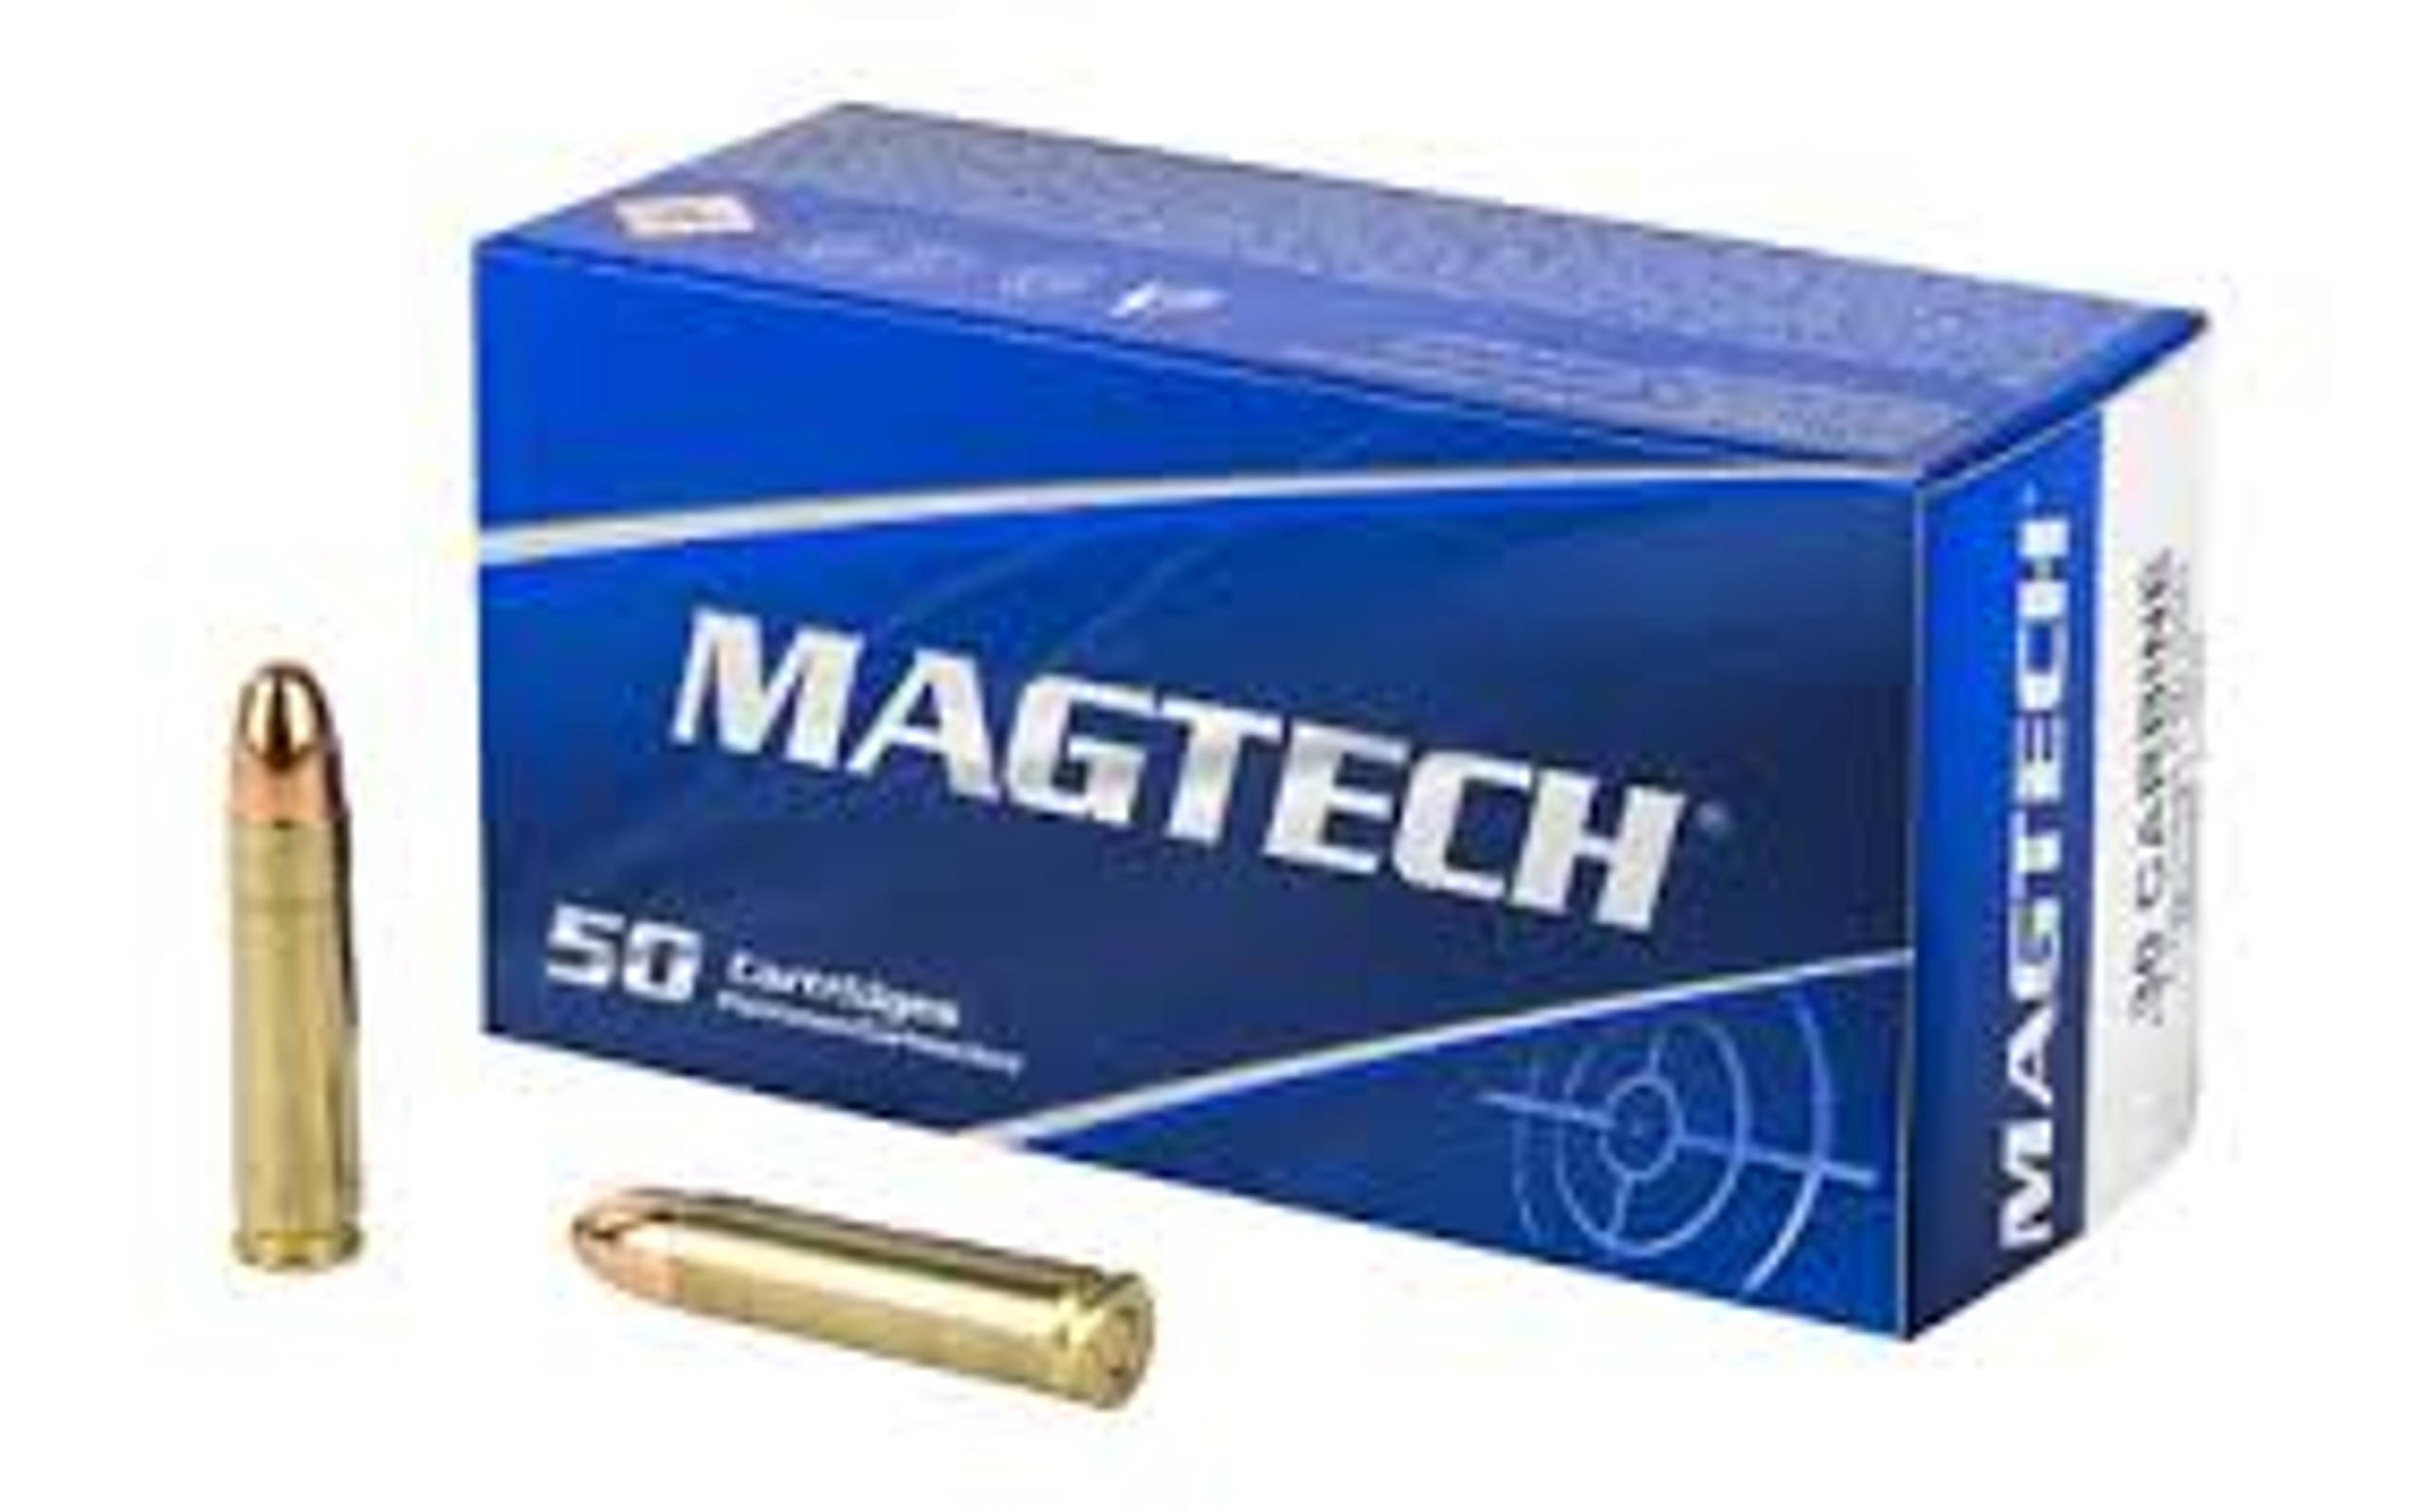 Magtech Ammunition 30 Carbine 110 Grain Full Metal Jacket 50 Rounds Brass Case 8332